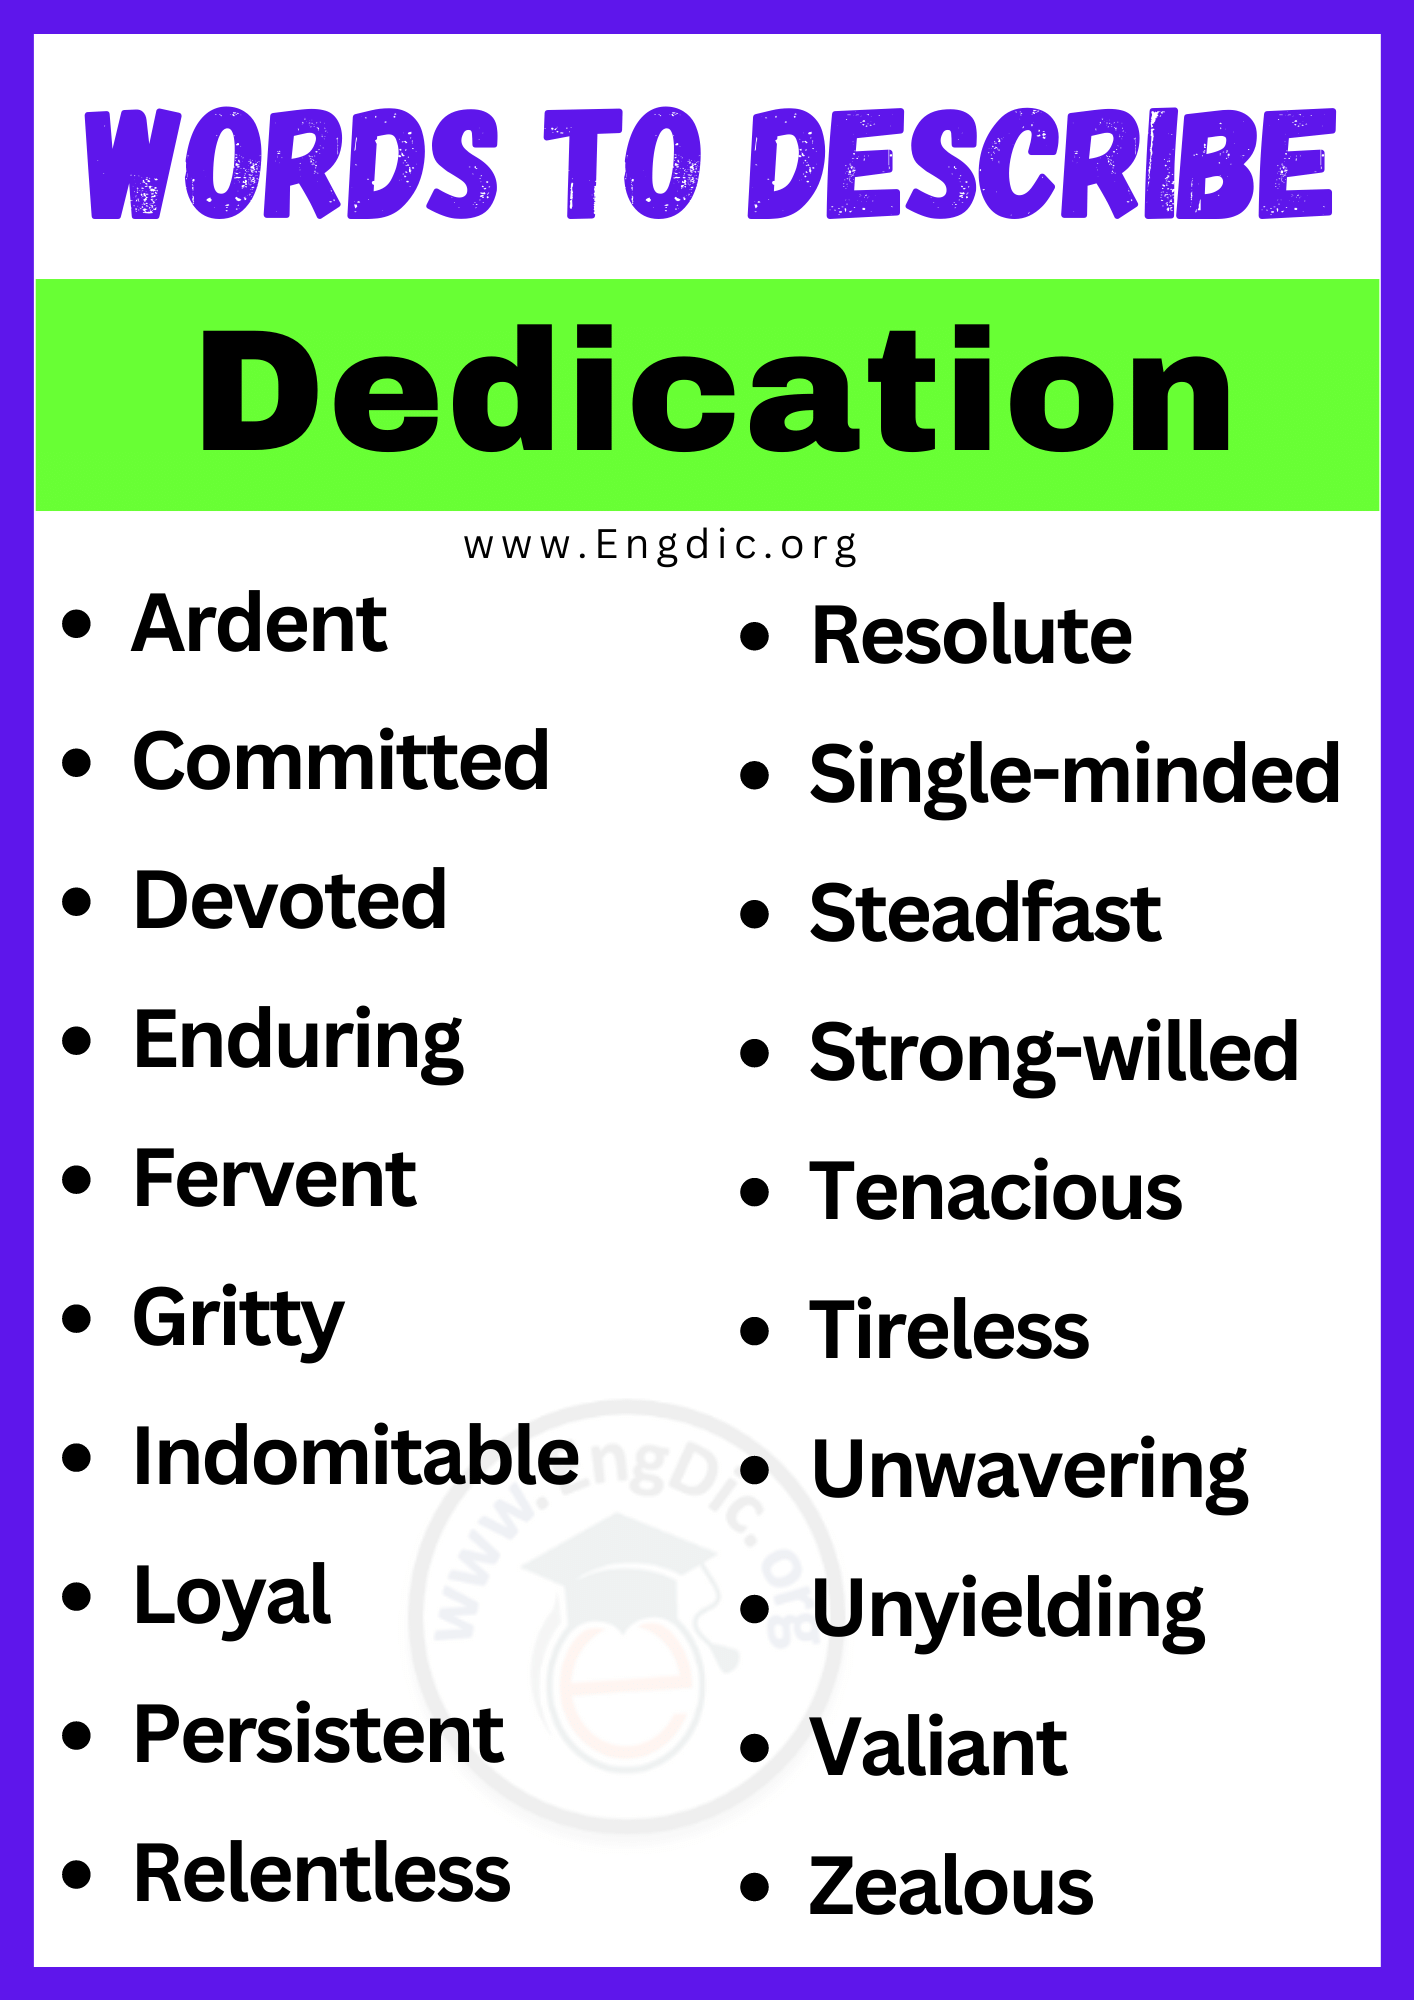 Words to Describe Dedication (1)